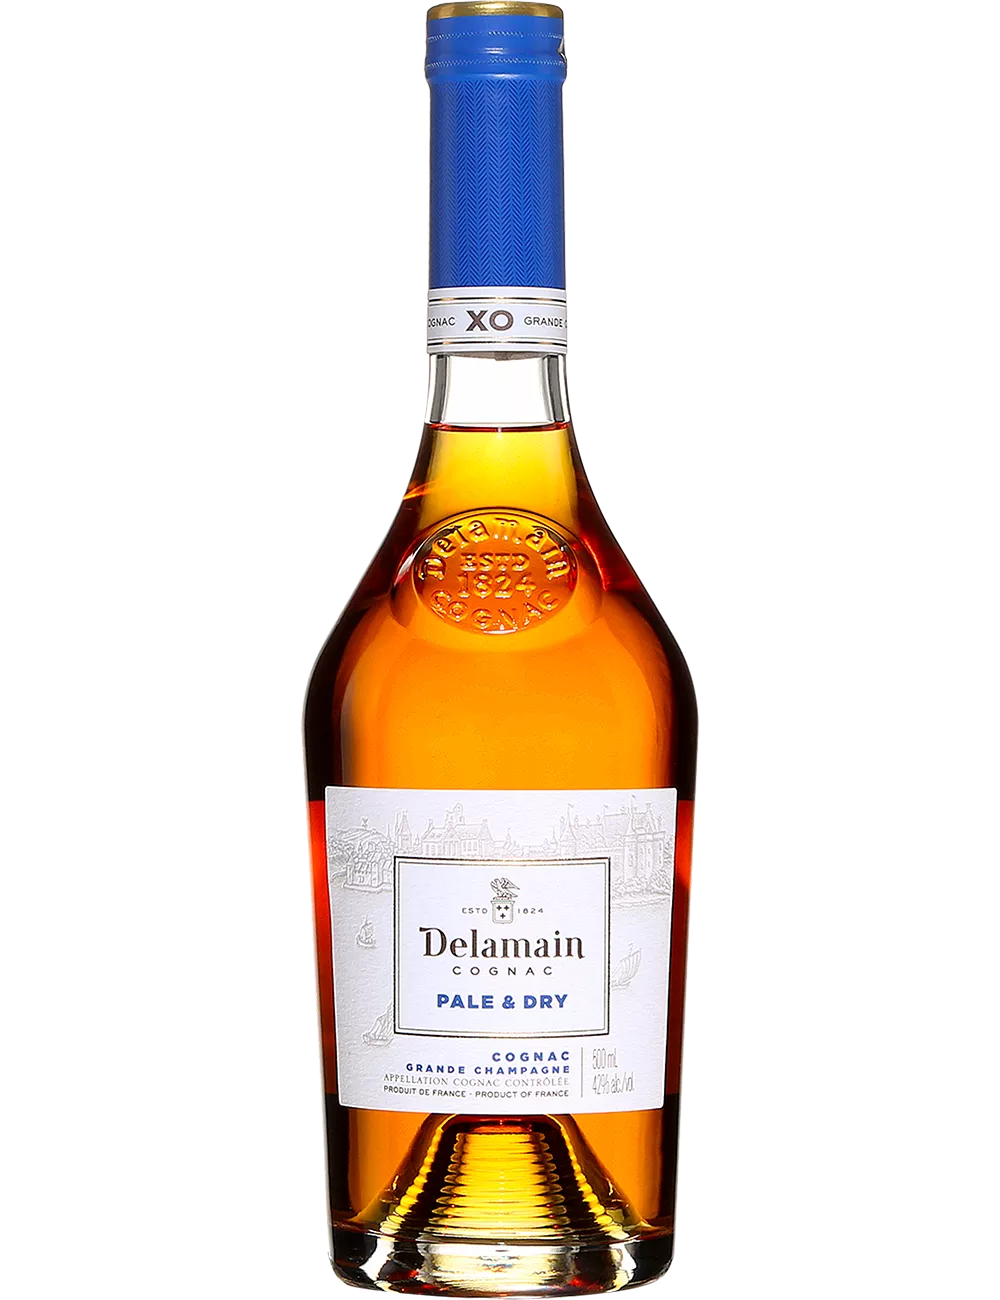 Delamain - Pale & Dry - Cognac